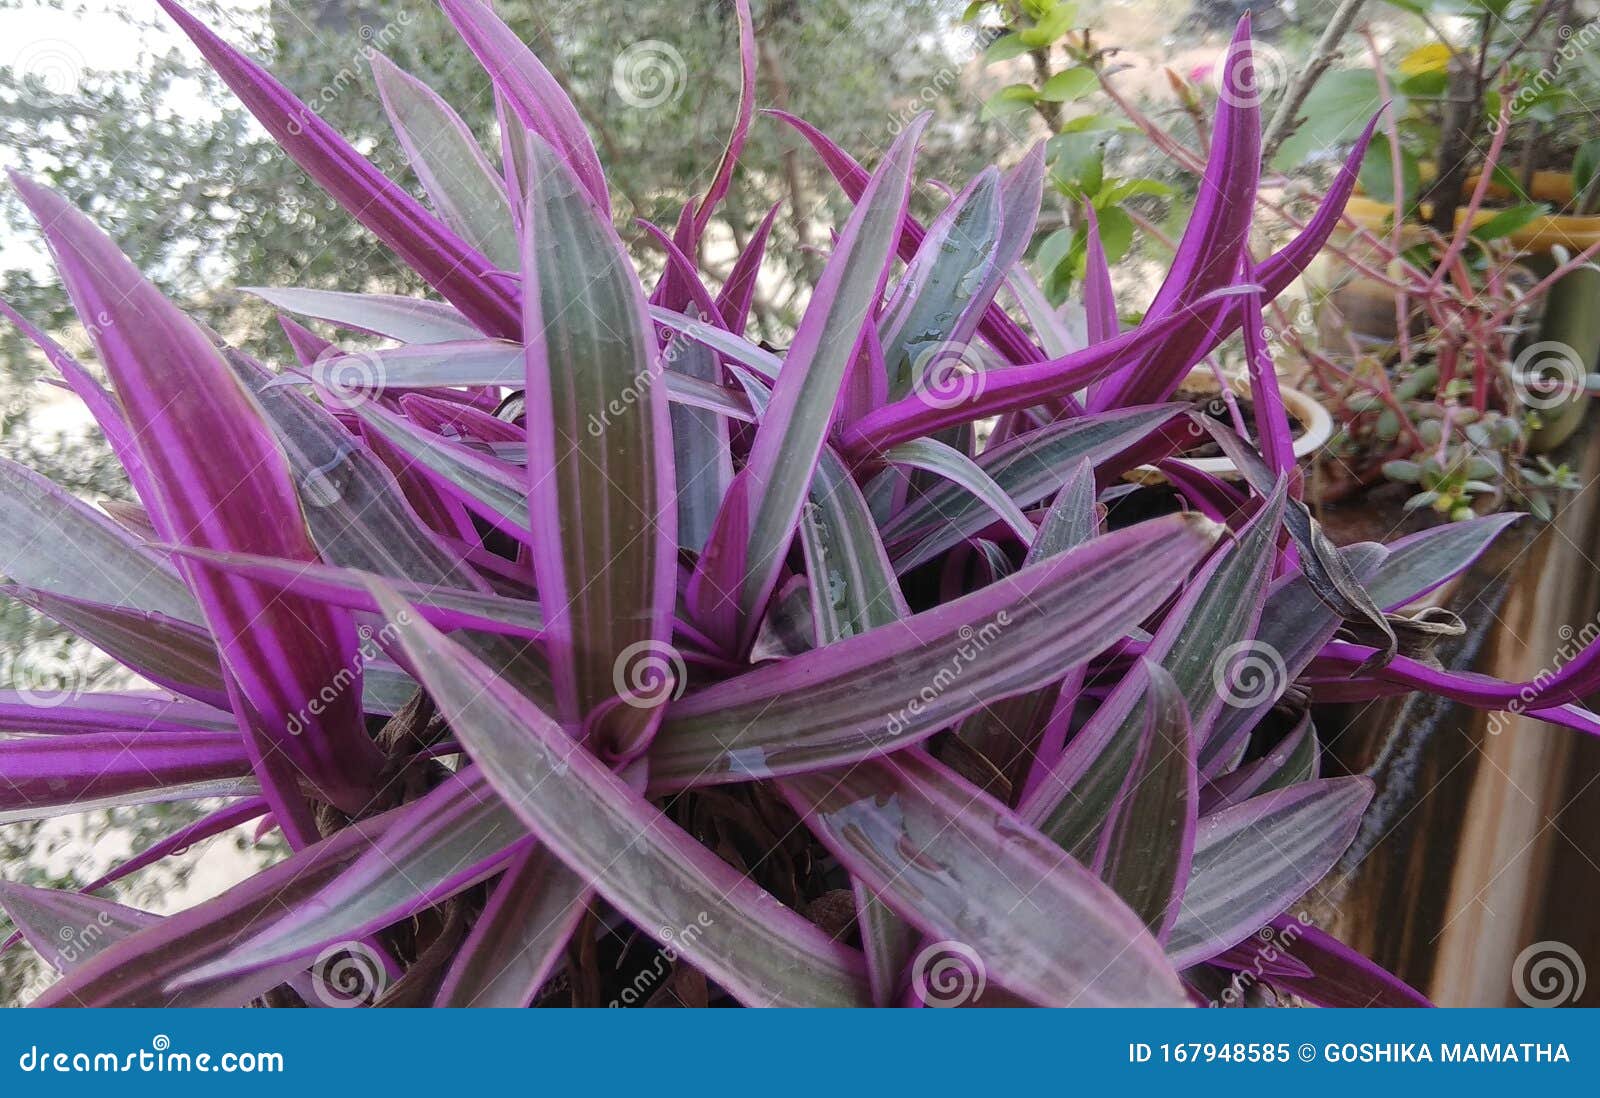 一株看起来五颜六色的植物的紫叶库存图片 图片包括有一株看起来五颜六色的植物的紫叶